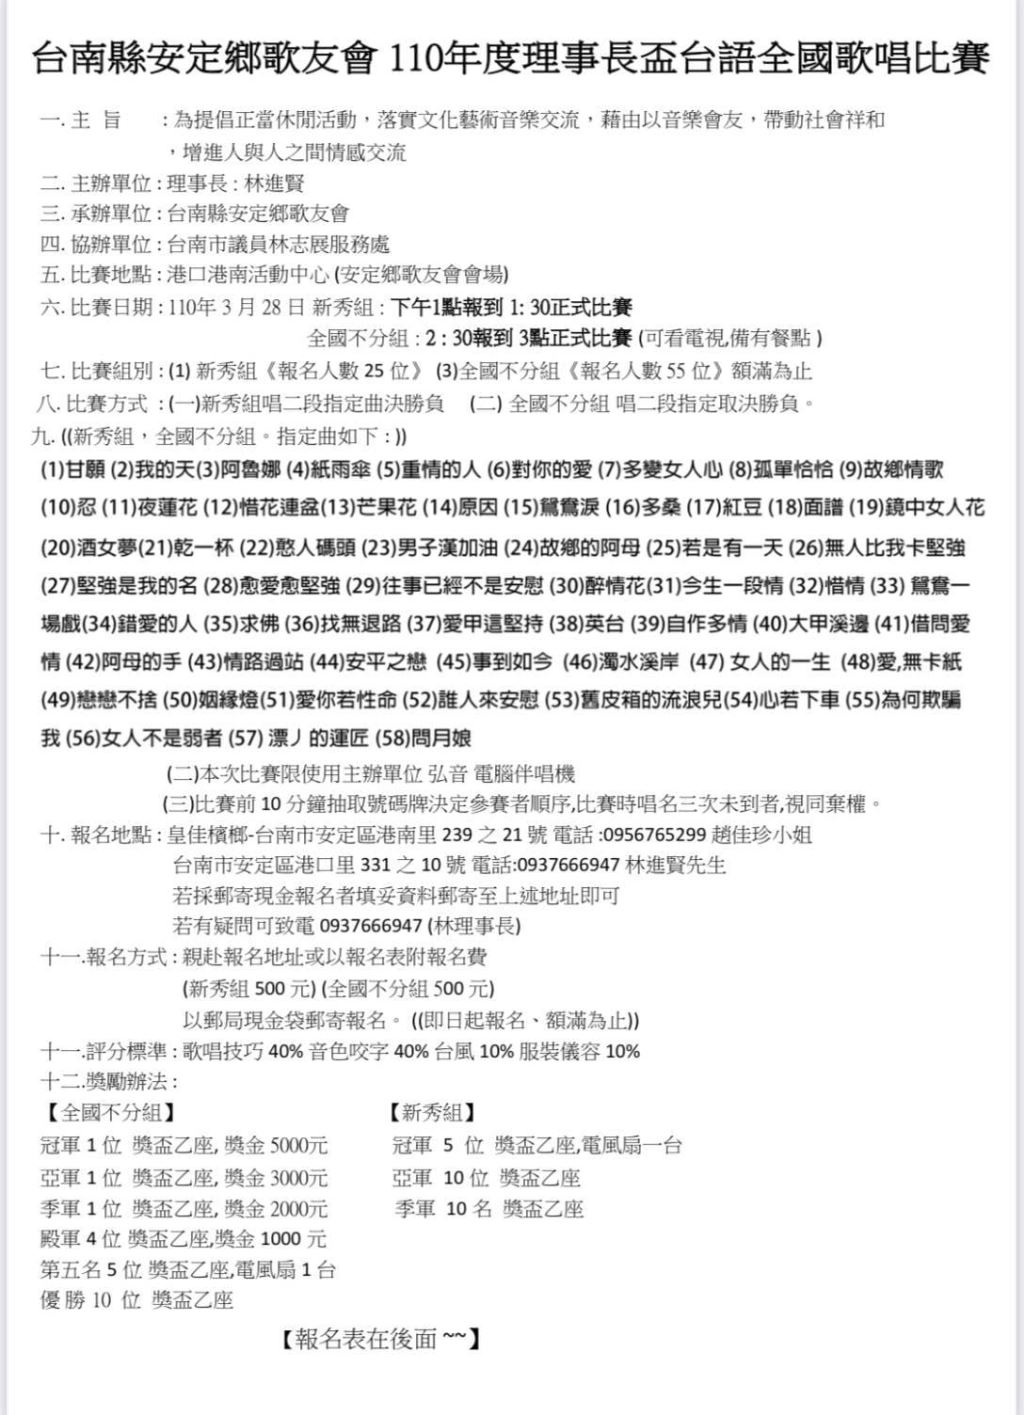 2021年110年台南縣安定鄉歌友會 110年度理事長盃台語全國歌唱比賽